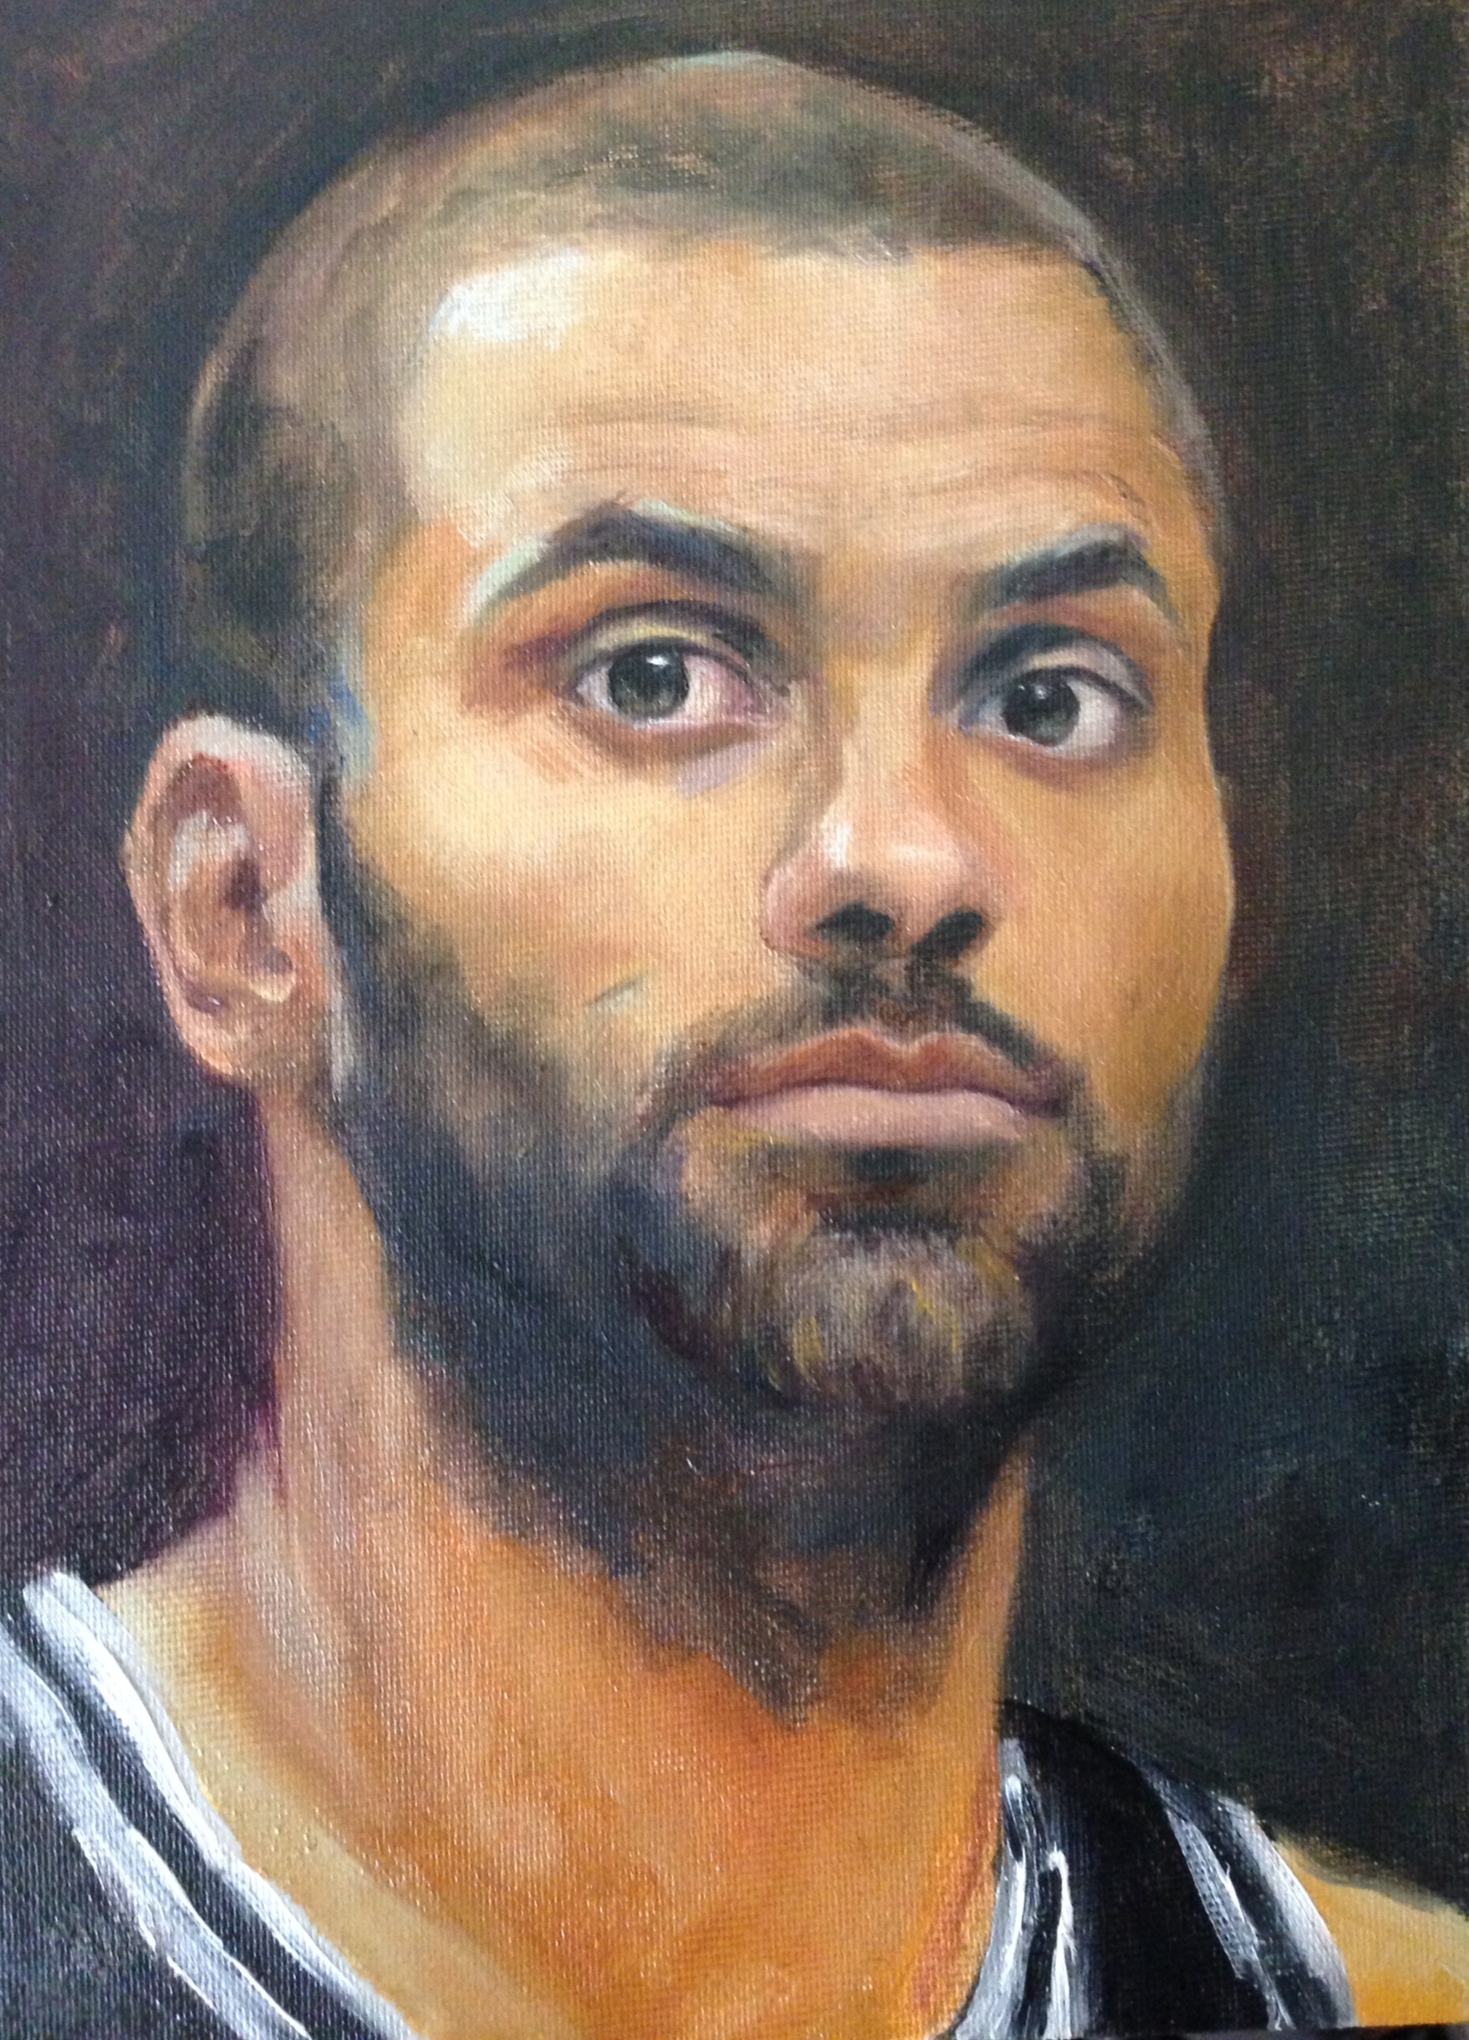 Tony-parker-oil-portrait